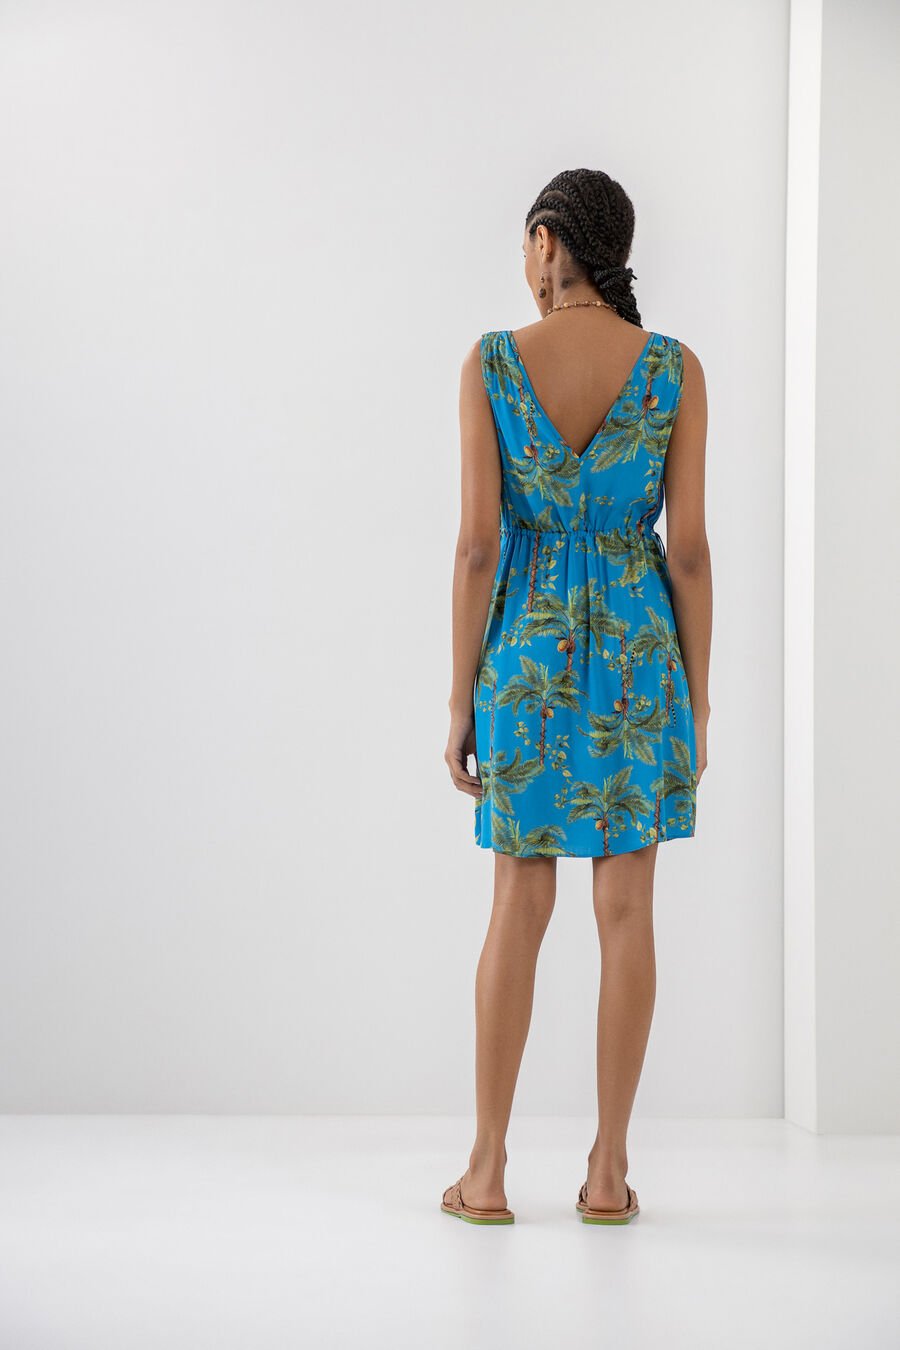 LEZ A LEZ - Short Printed Viscose Dress With Tie - 7506L - Boutique Bubbles